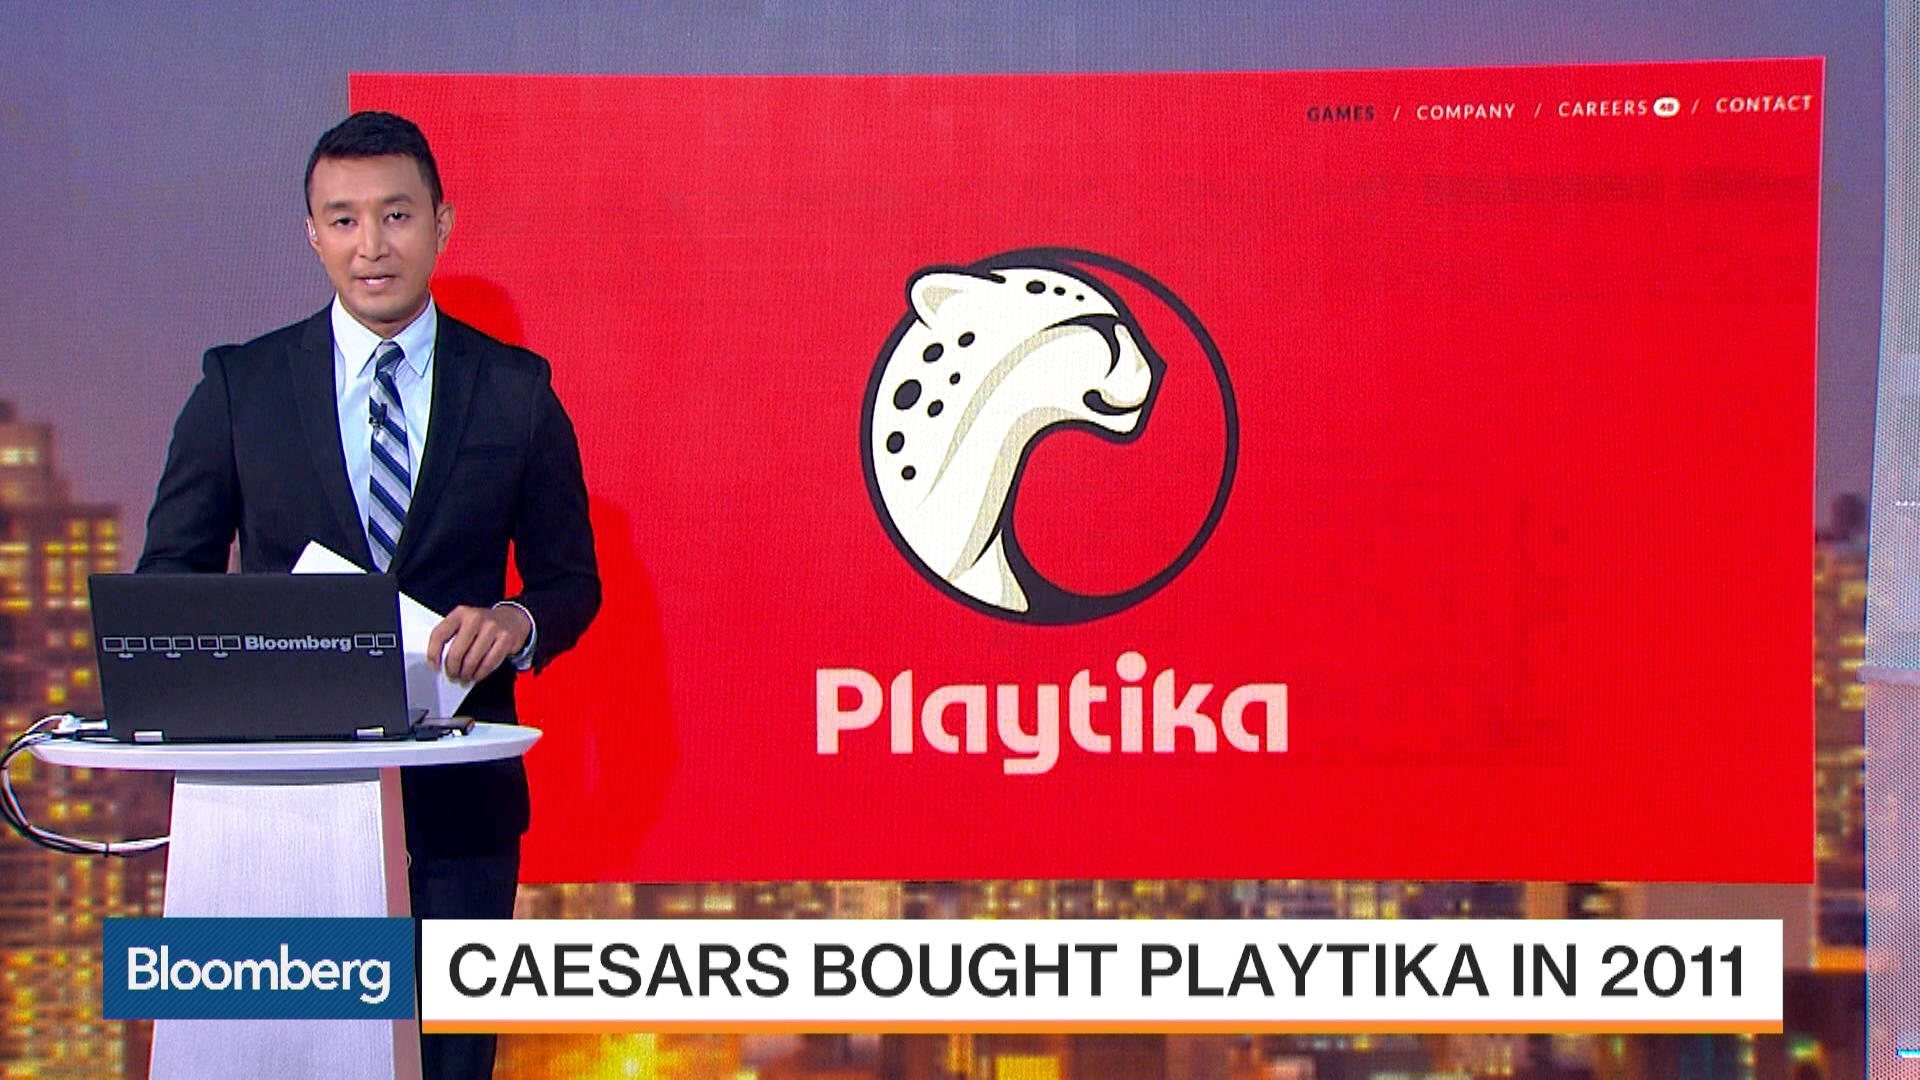 Caesars Casino Playtika